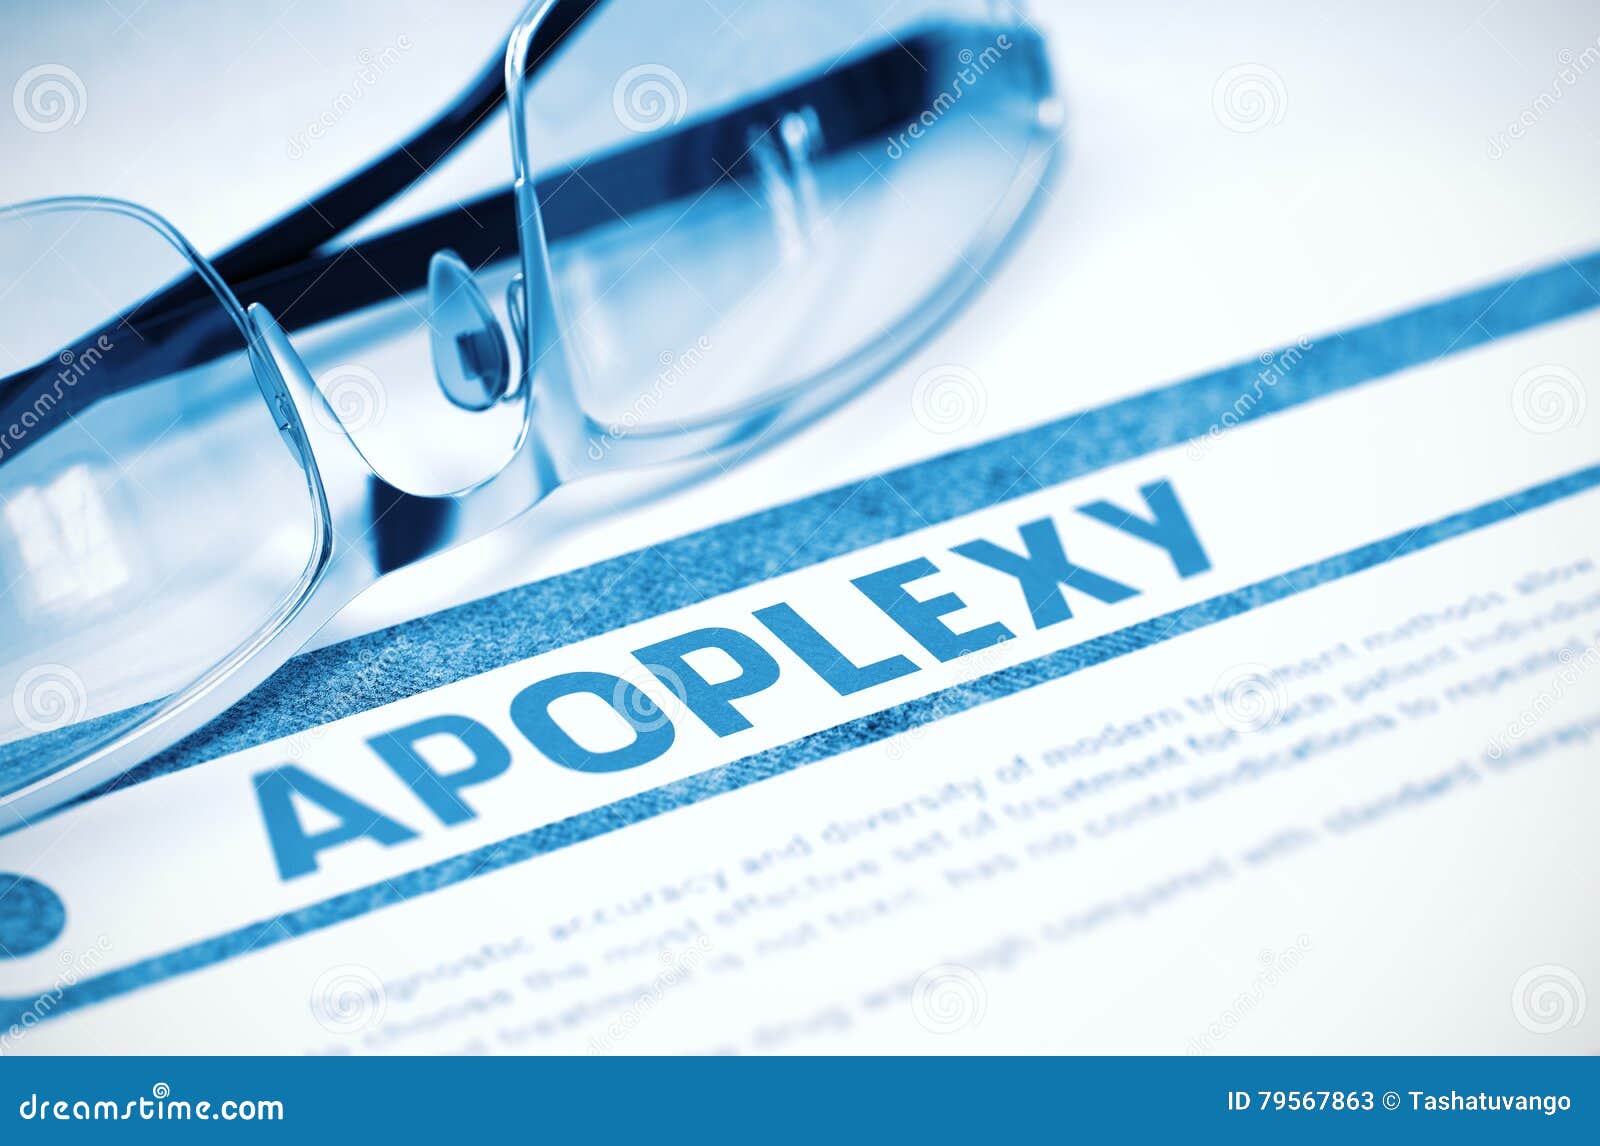 diagnosis - apoplexy. medicine concept. 3d .